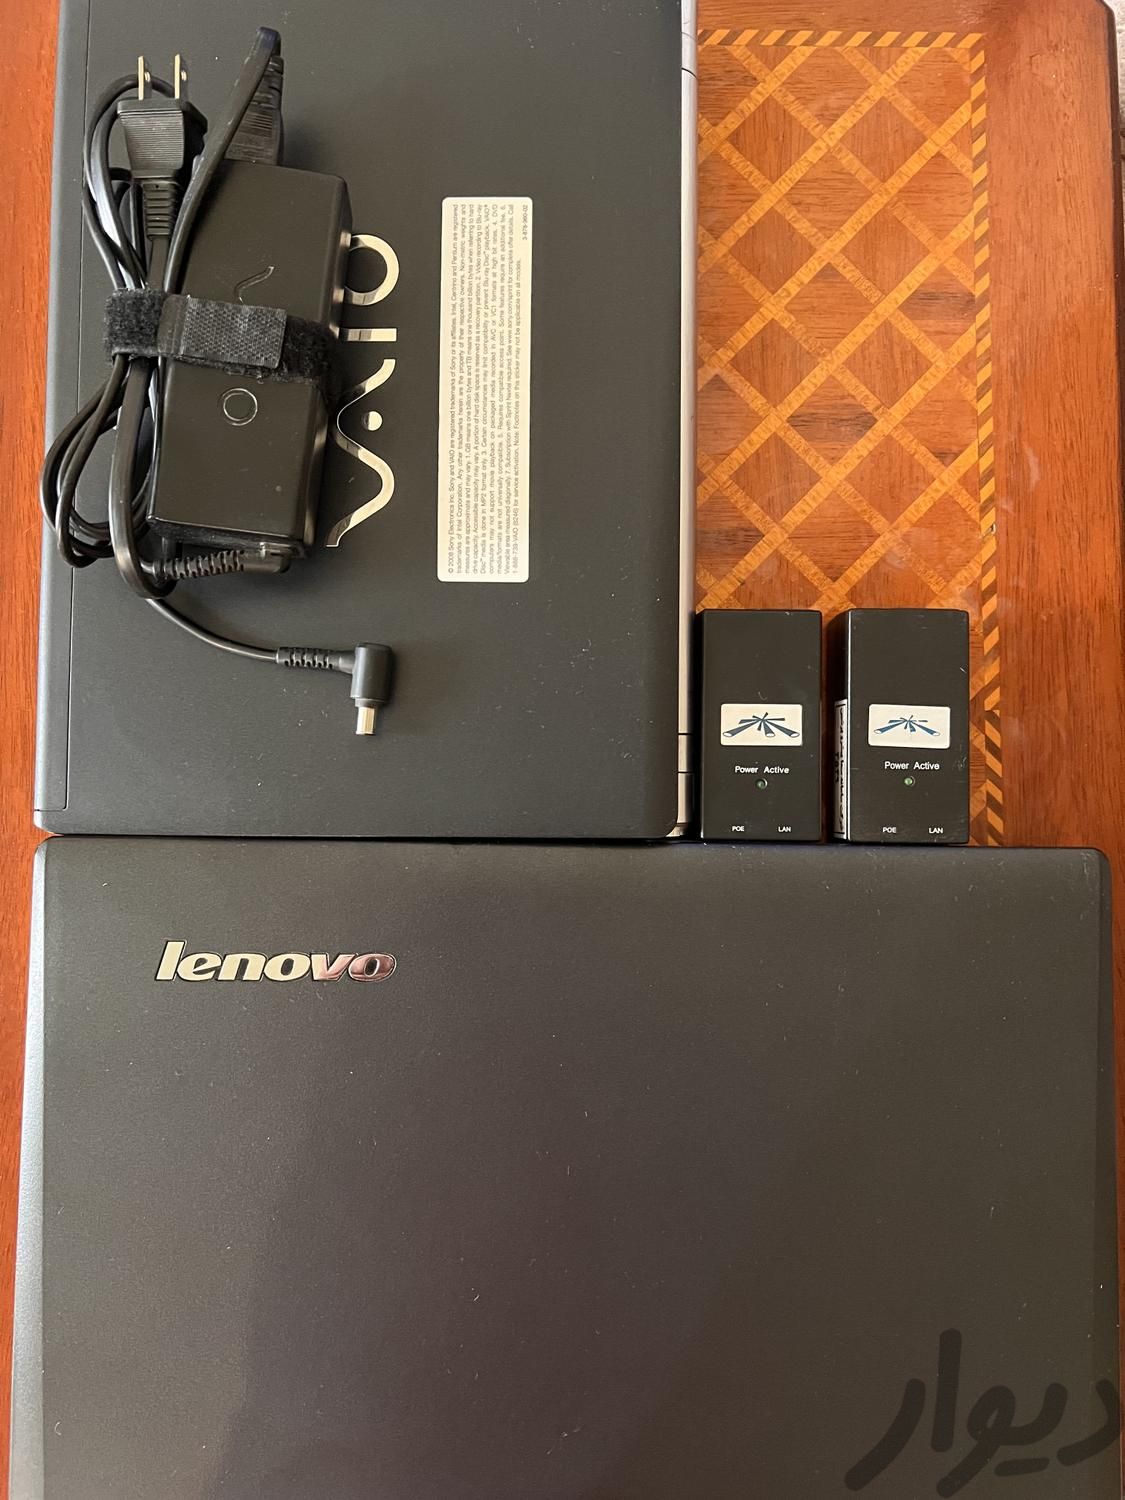 دو عدد لپ تاپ Lenovo و دو عدد Poe|رایانه همراه|تهران, زرگنده|دیوار